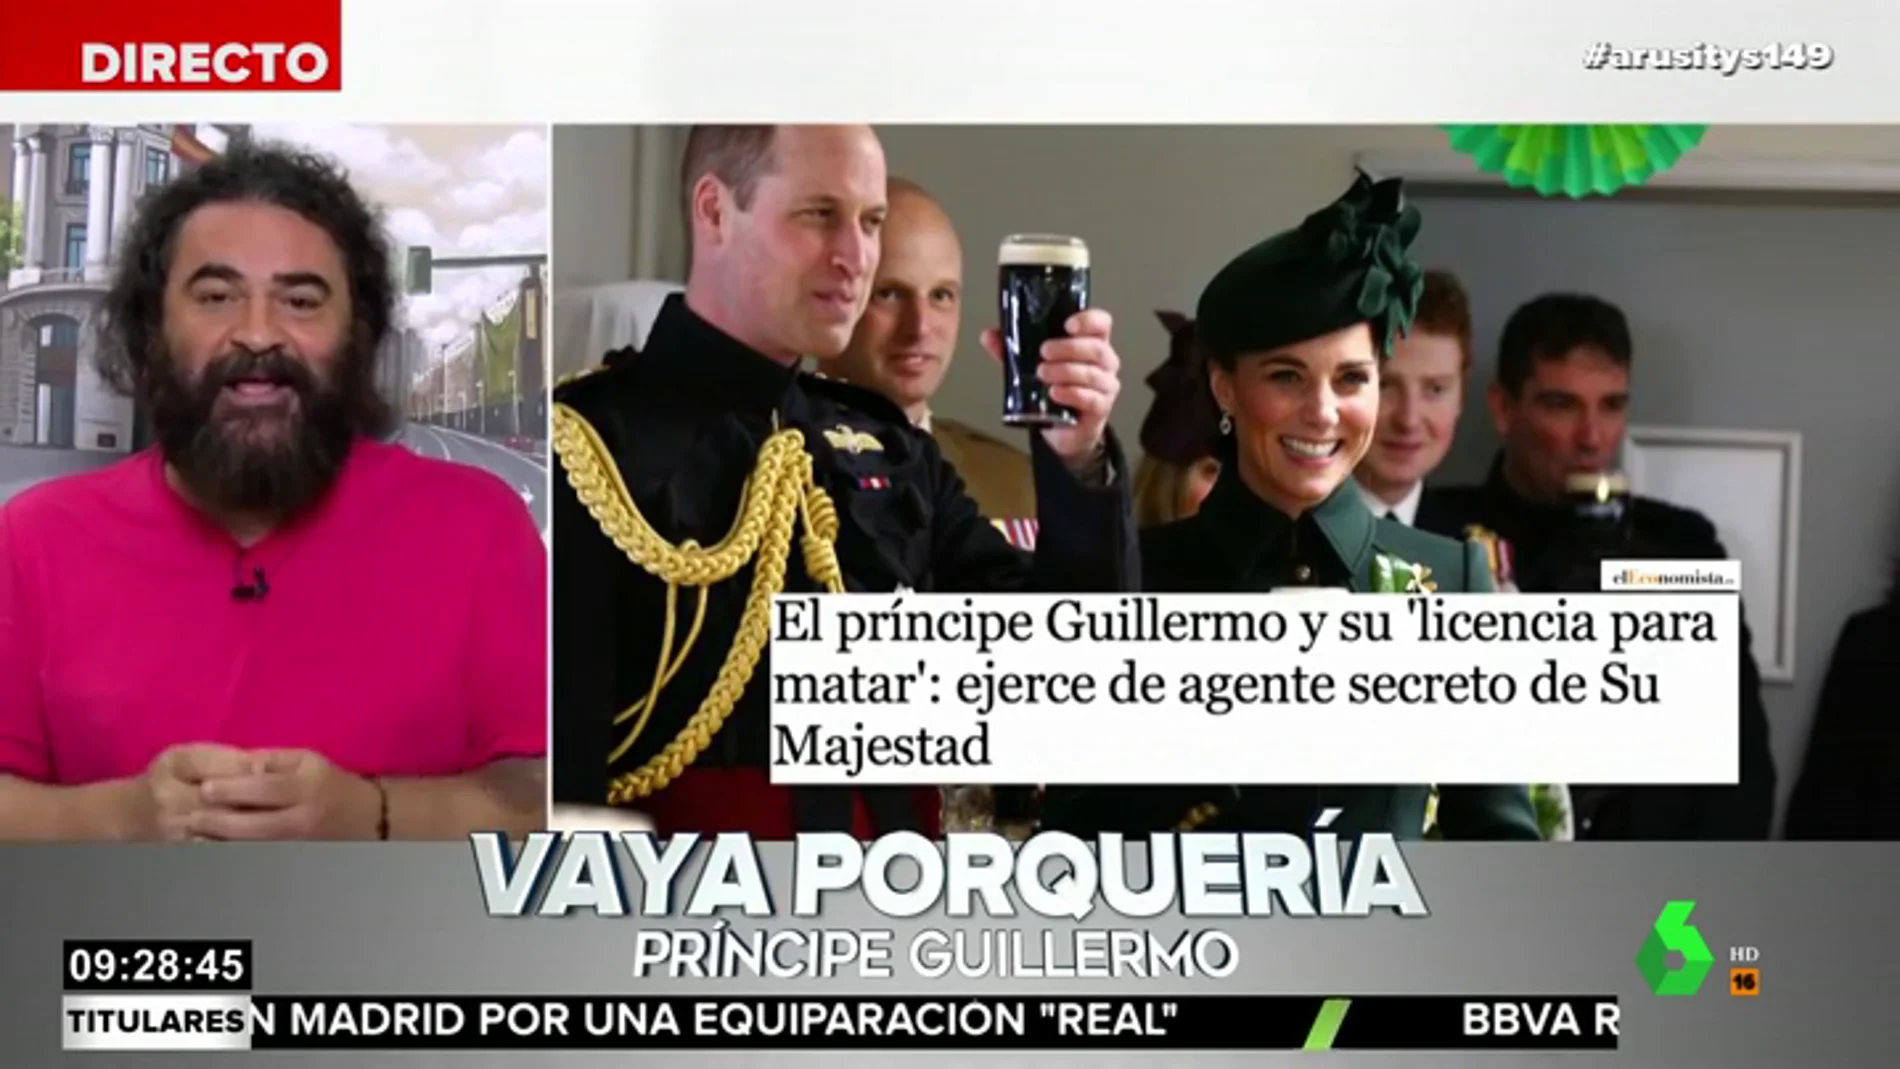 El análisis de El Sevilla sobre el trabajo de espía del príncipe Guillermo: "Yo prefiero el secreto ibérico"